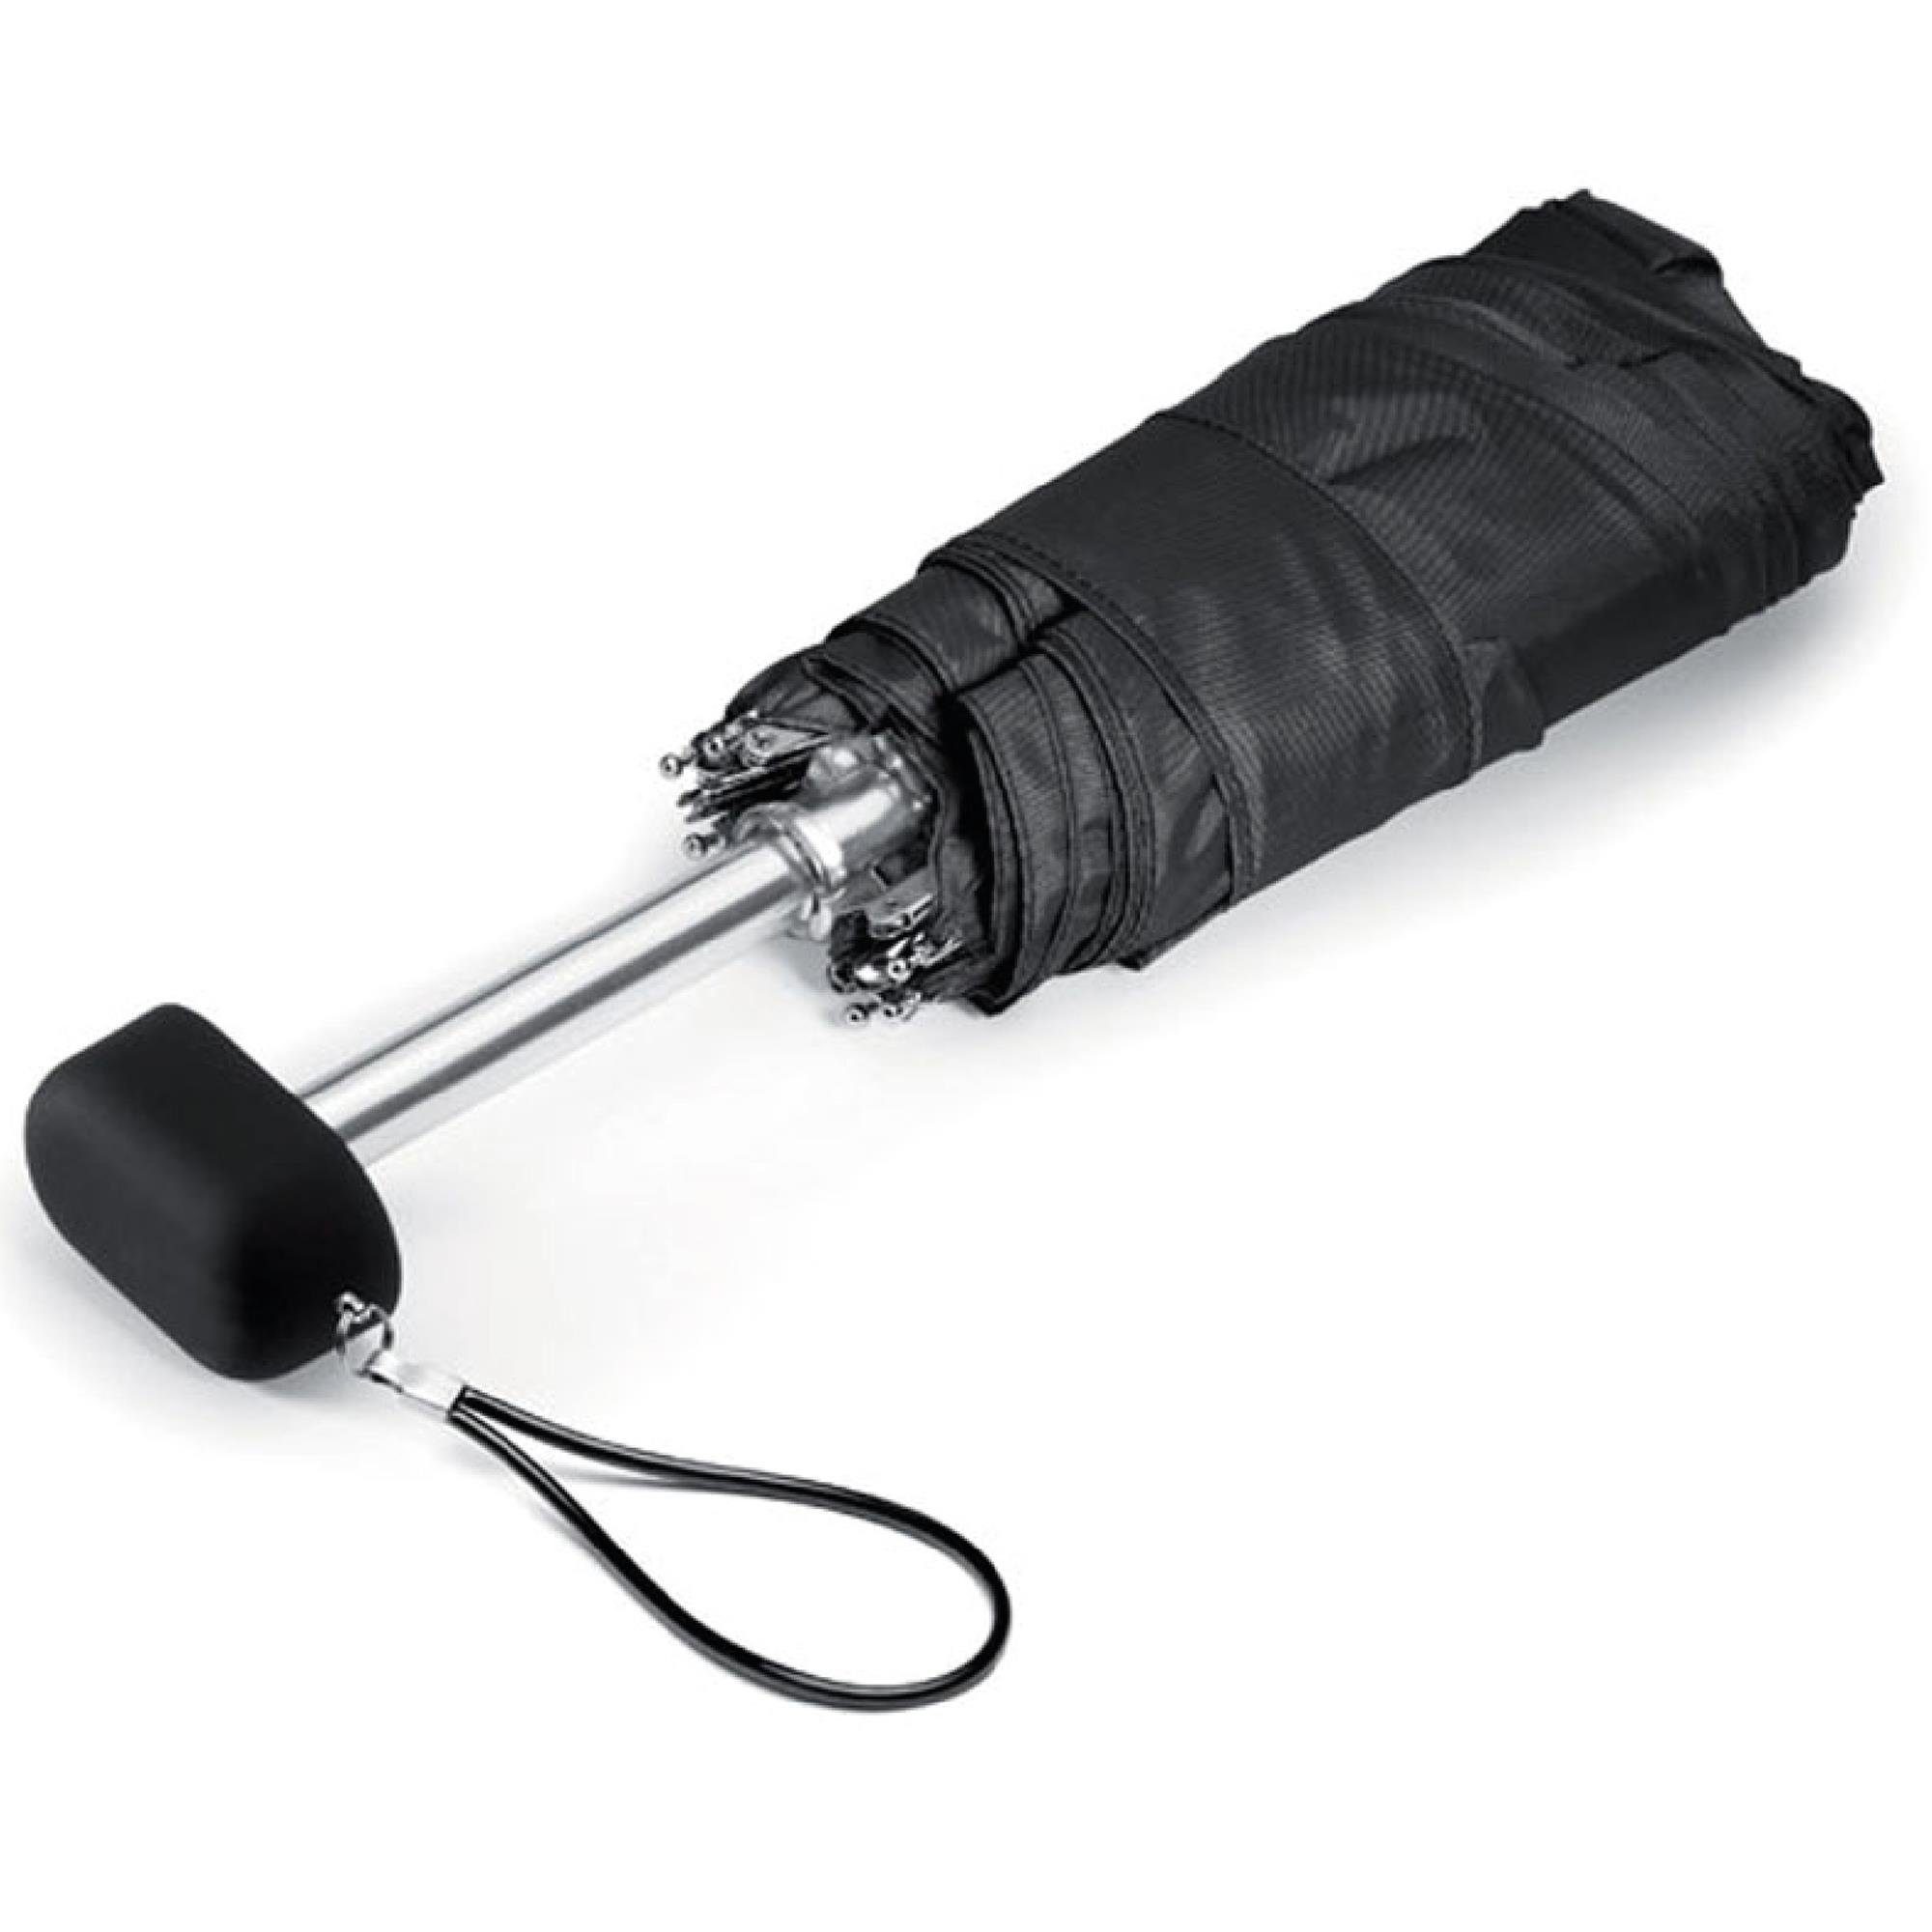 Bestlivings Taschenregenschirm, geschlossen Regenschirm schnelltrocknend windfest stabil, 19cm, Mini ultraleicht, und Taschenregenschirm